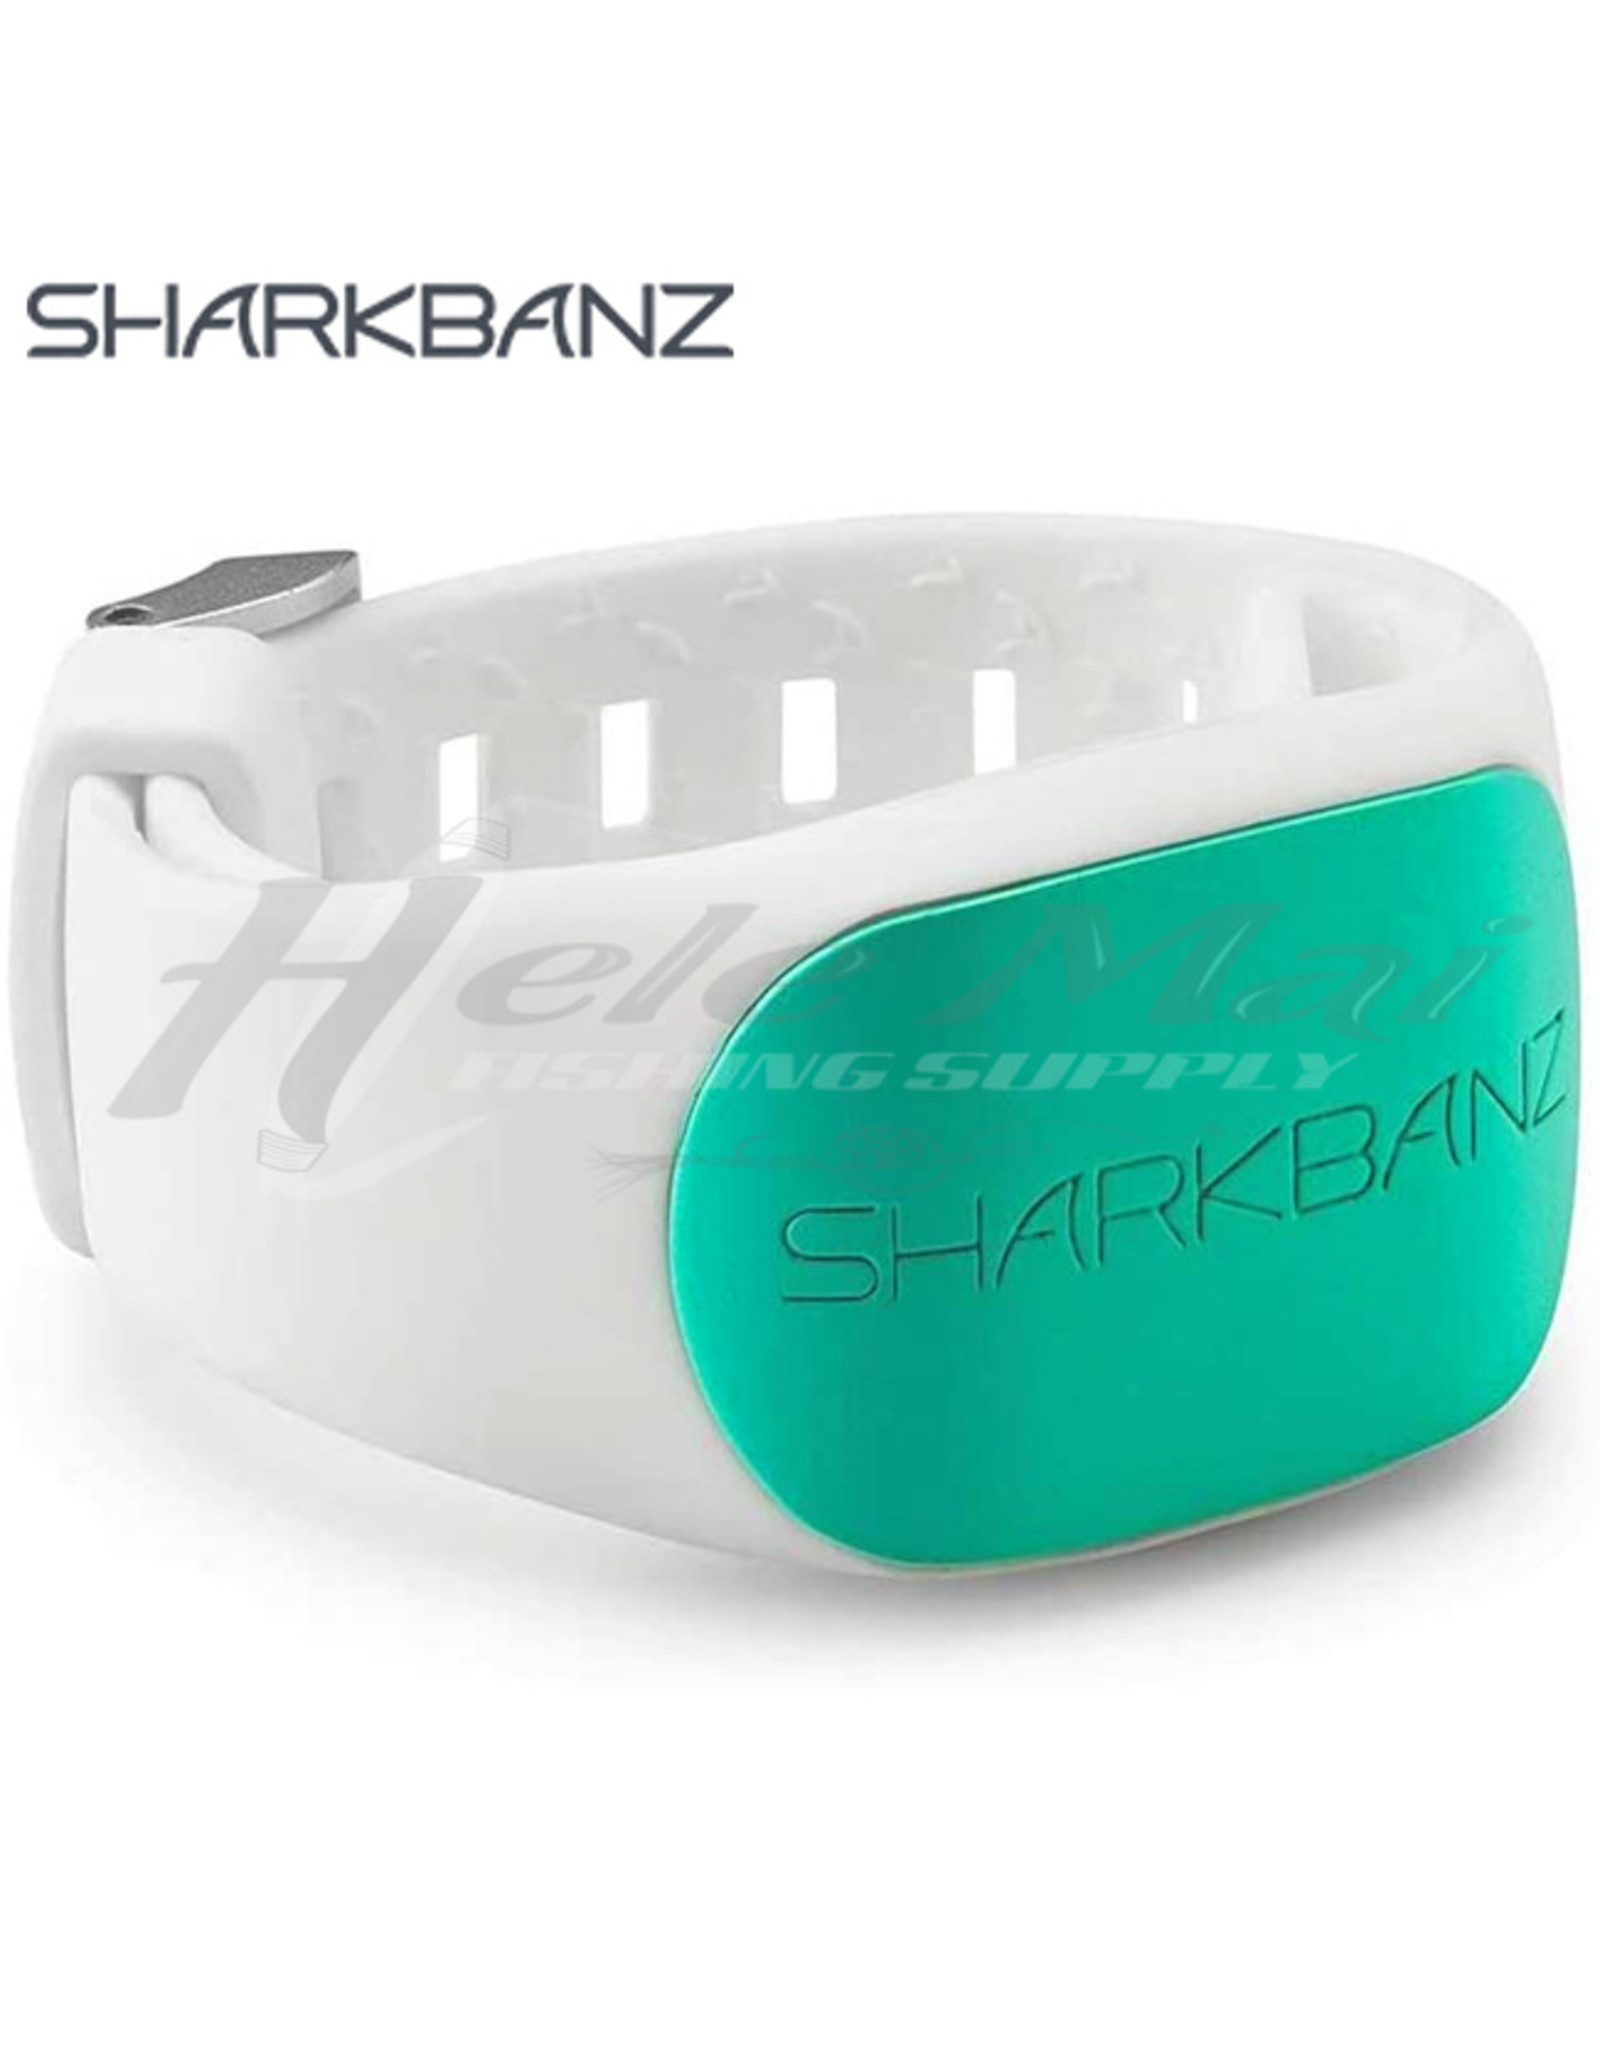 SHARKBANZ SHARKBANZ, ACTIVE SHARK DETERRANT BAND WHITE/SEAFOAM